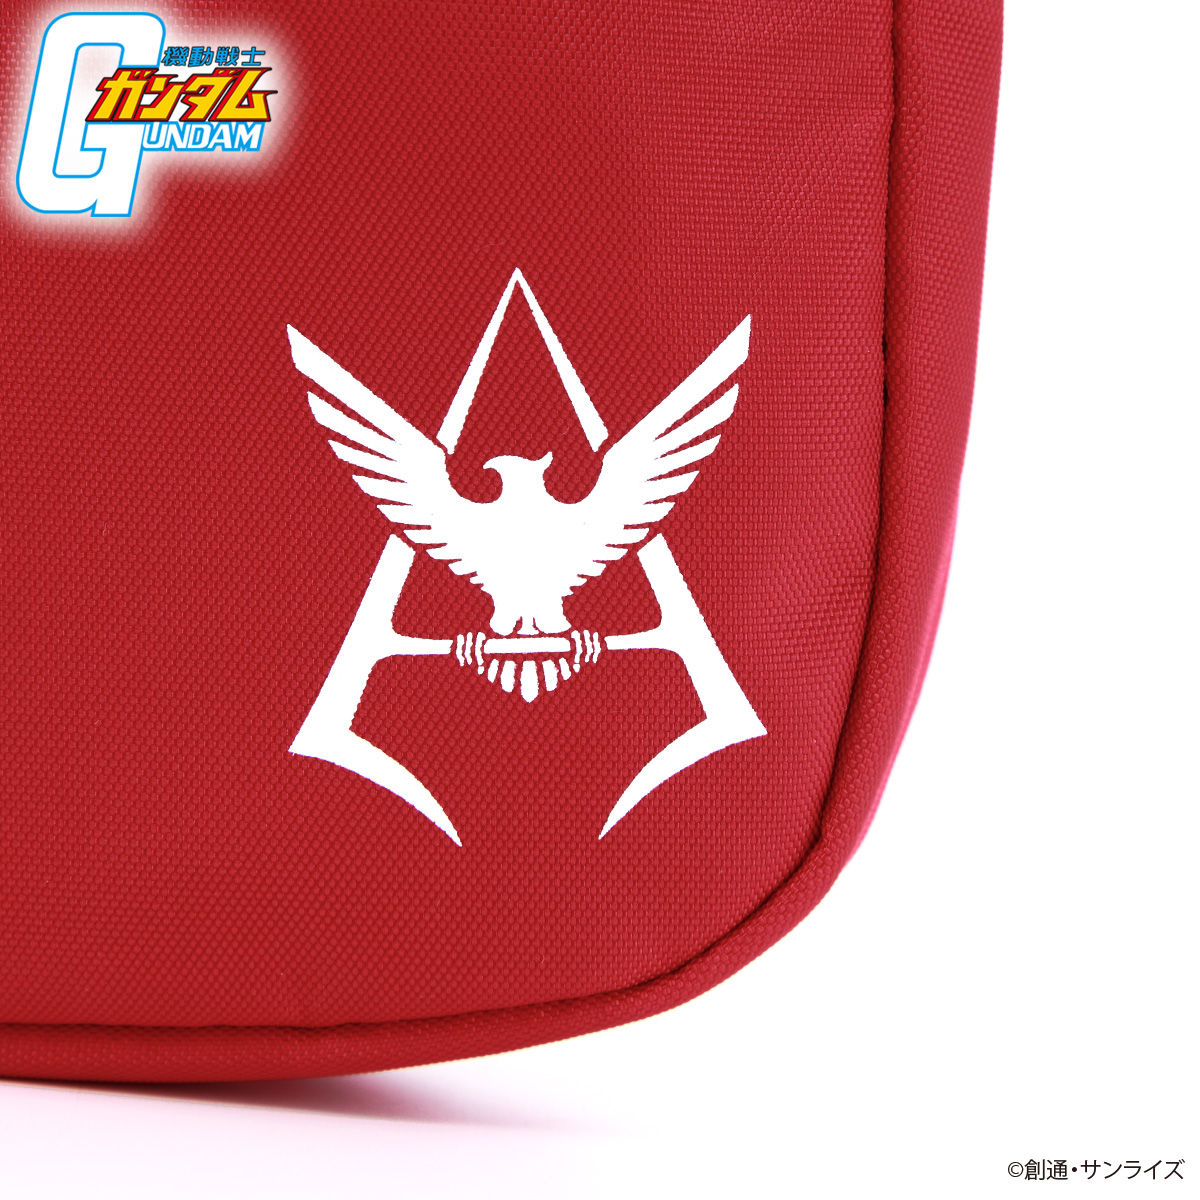 Mobile Suit Gundam Shoulder Bag